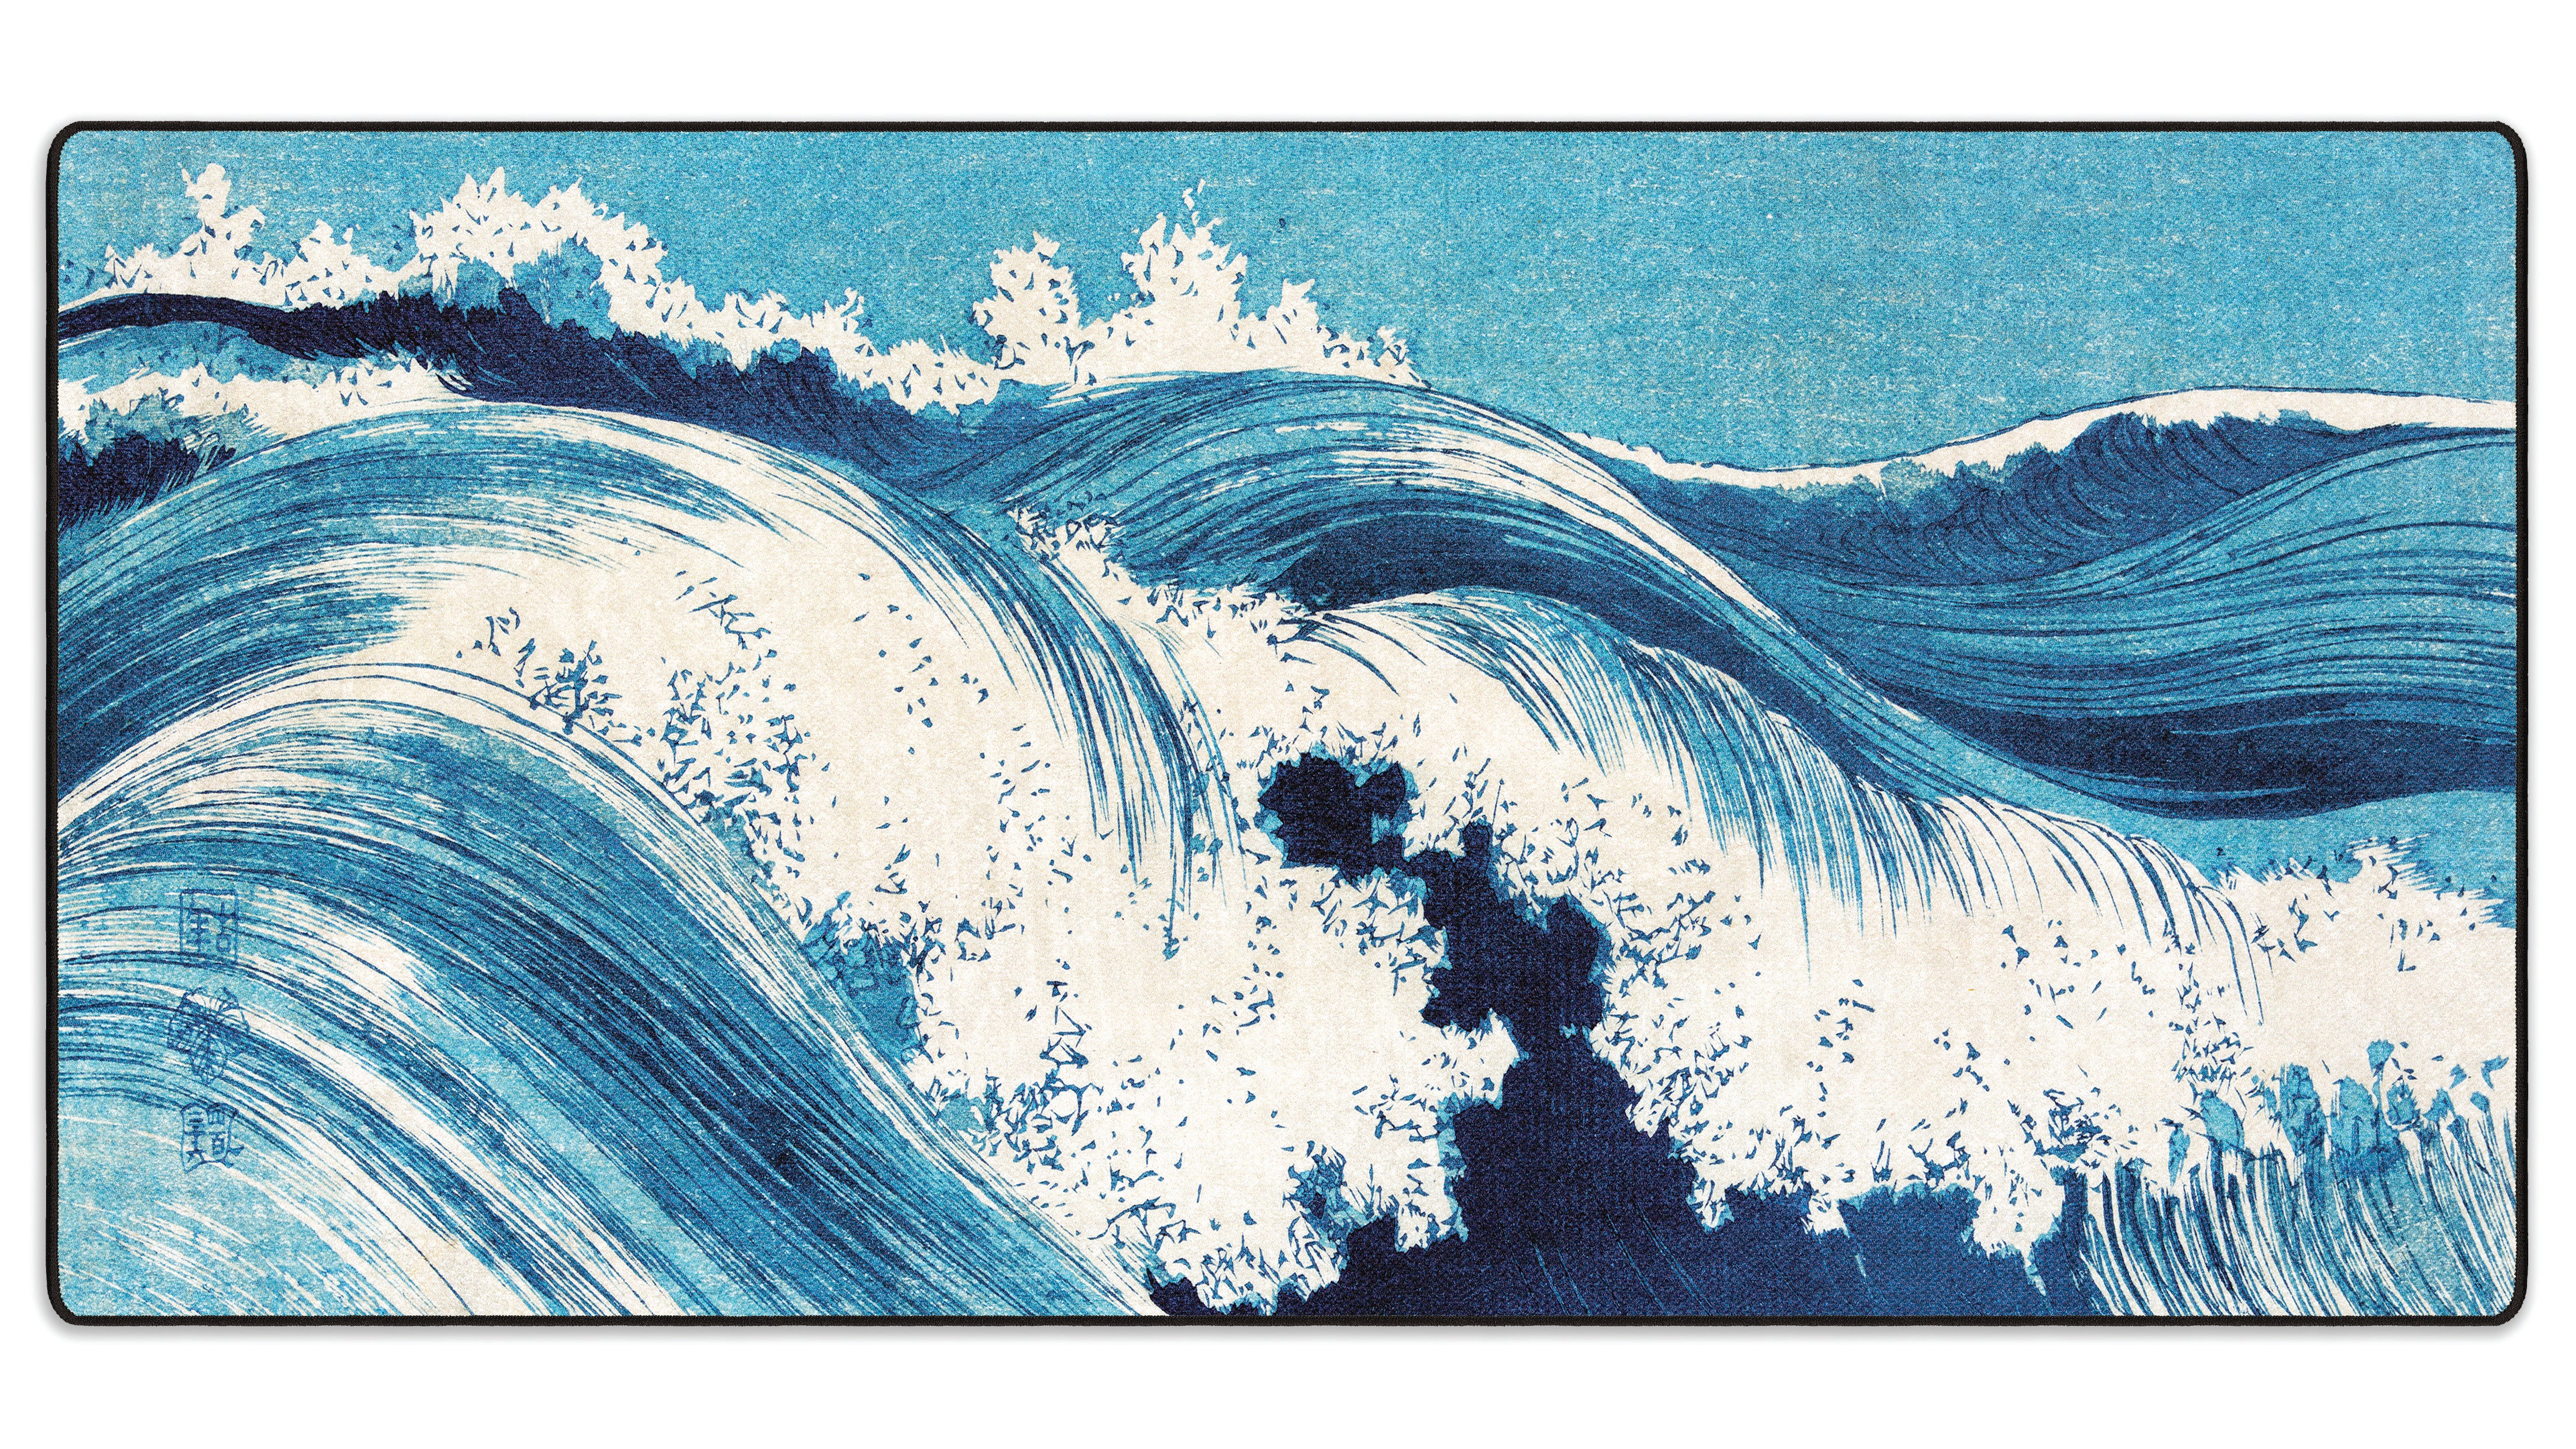 Ocean Waves by Uehara Konen - The Mousepad Company